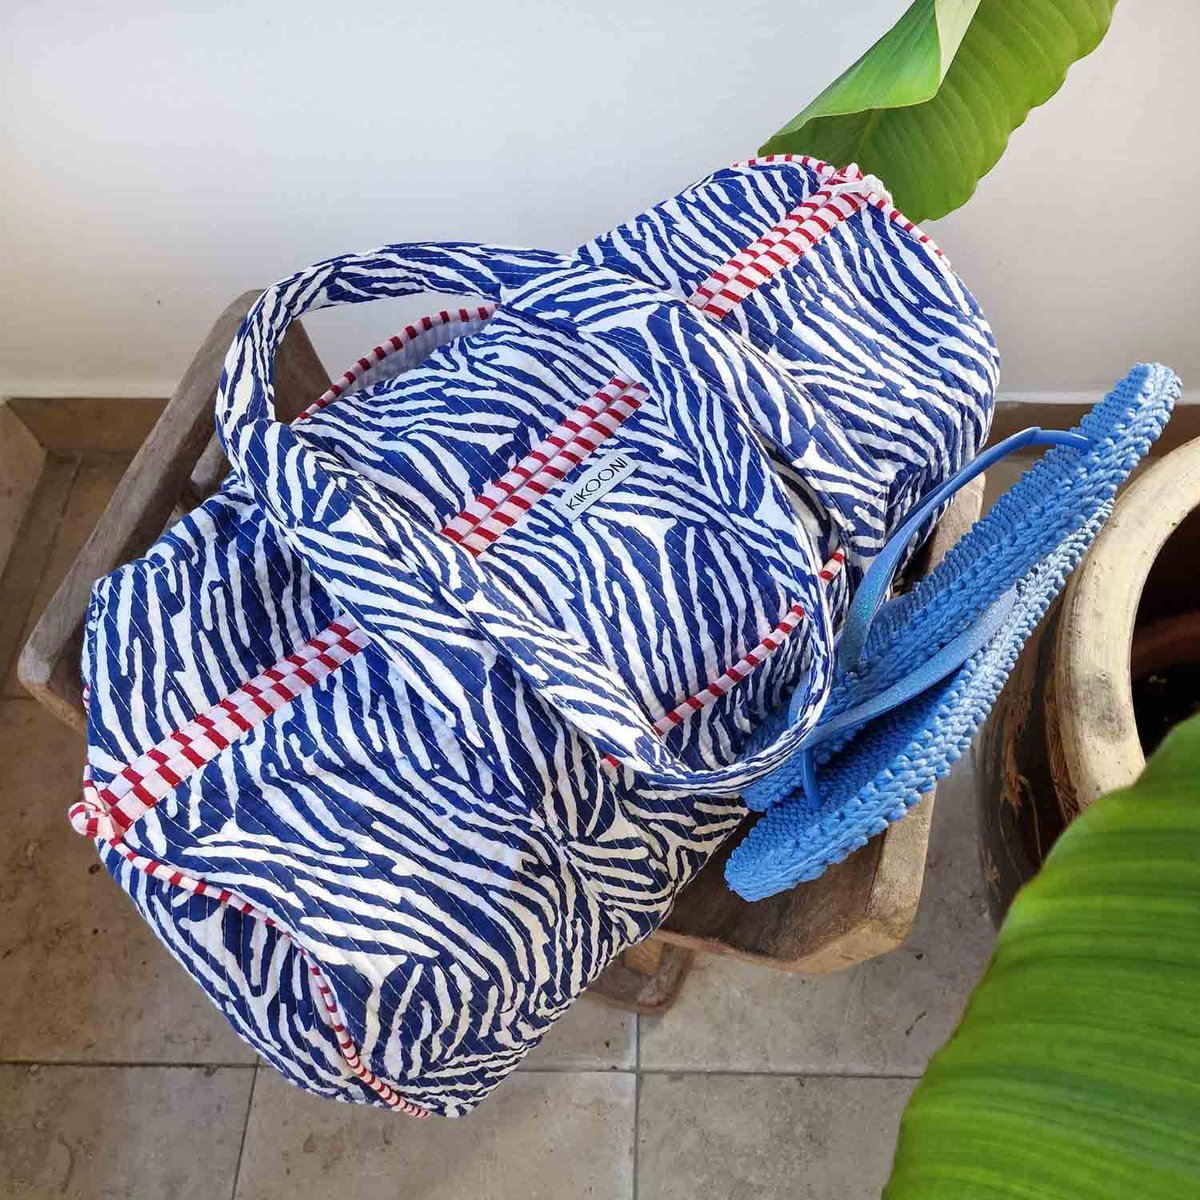 Handgemachte Baumwolltasche: Blue Zebra